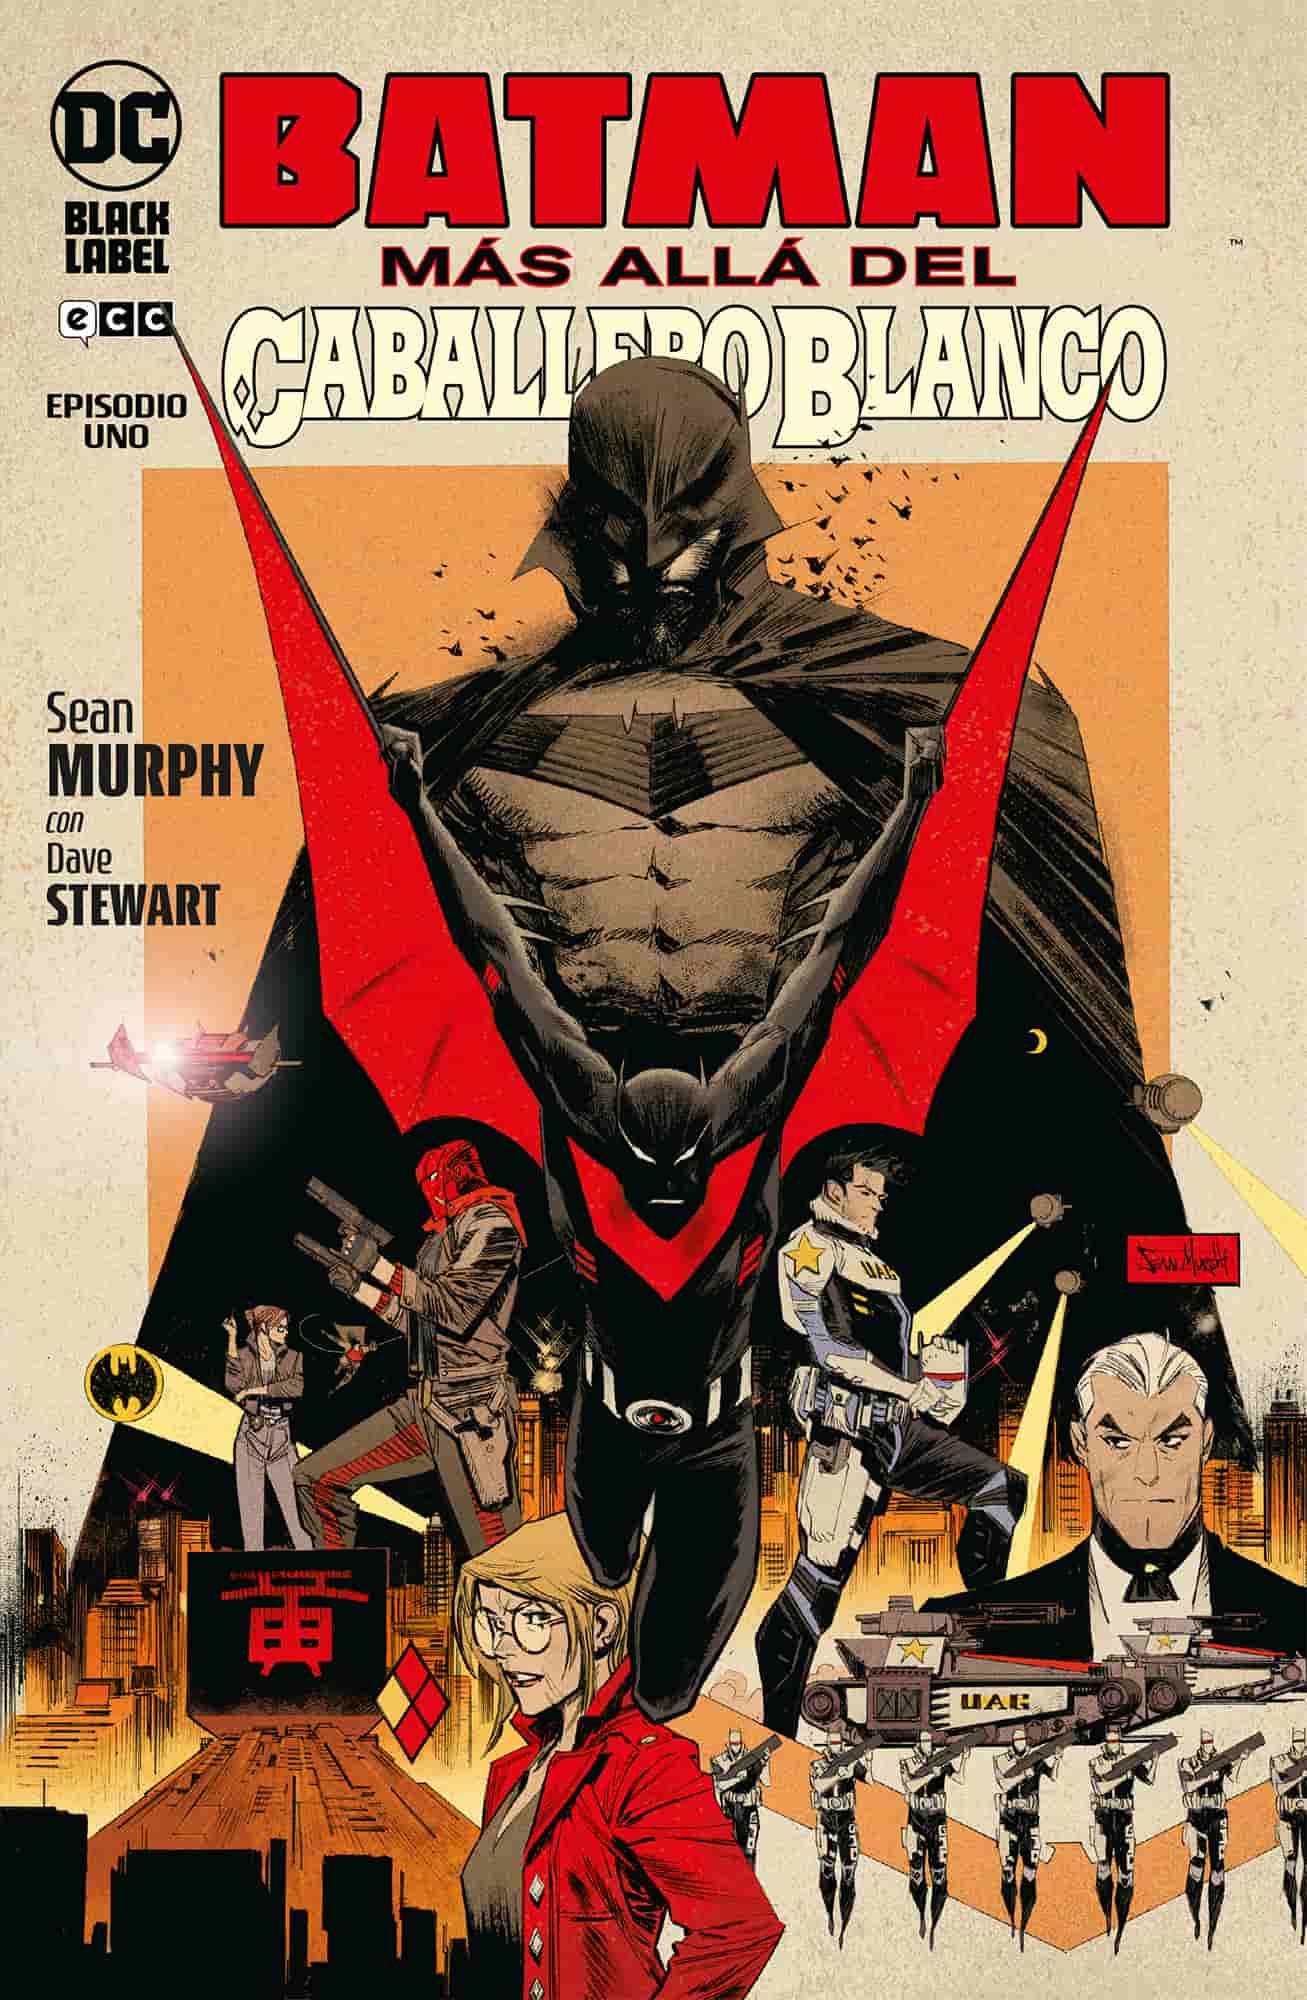 Batman, DC Comics, Sean Murphy, comics